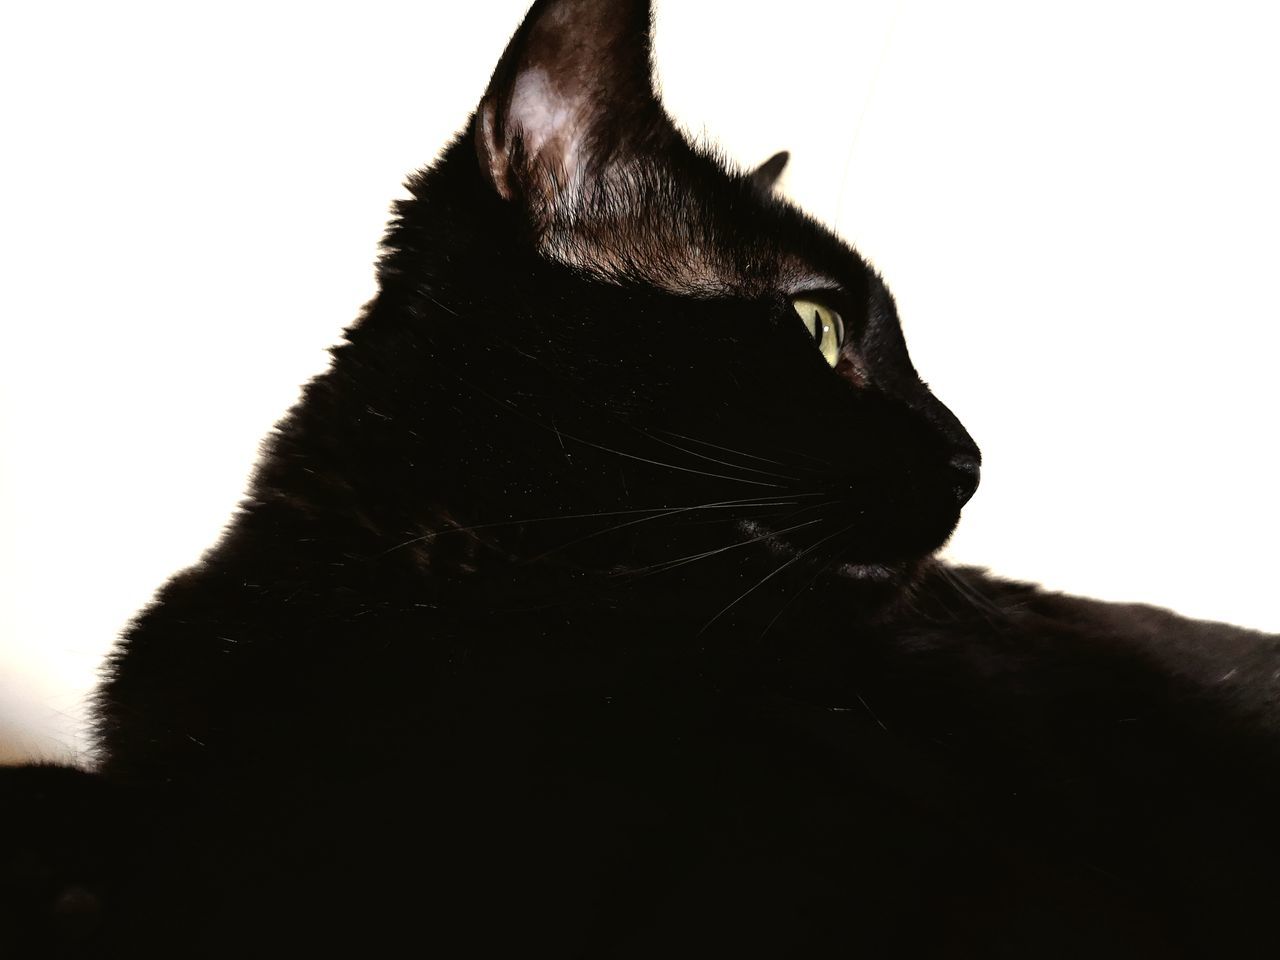 CLOSE-UP OF BLACK CAT